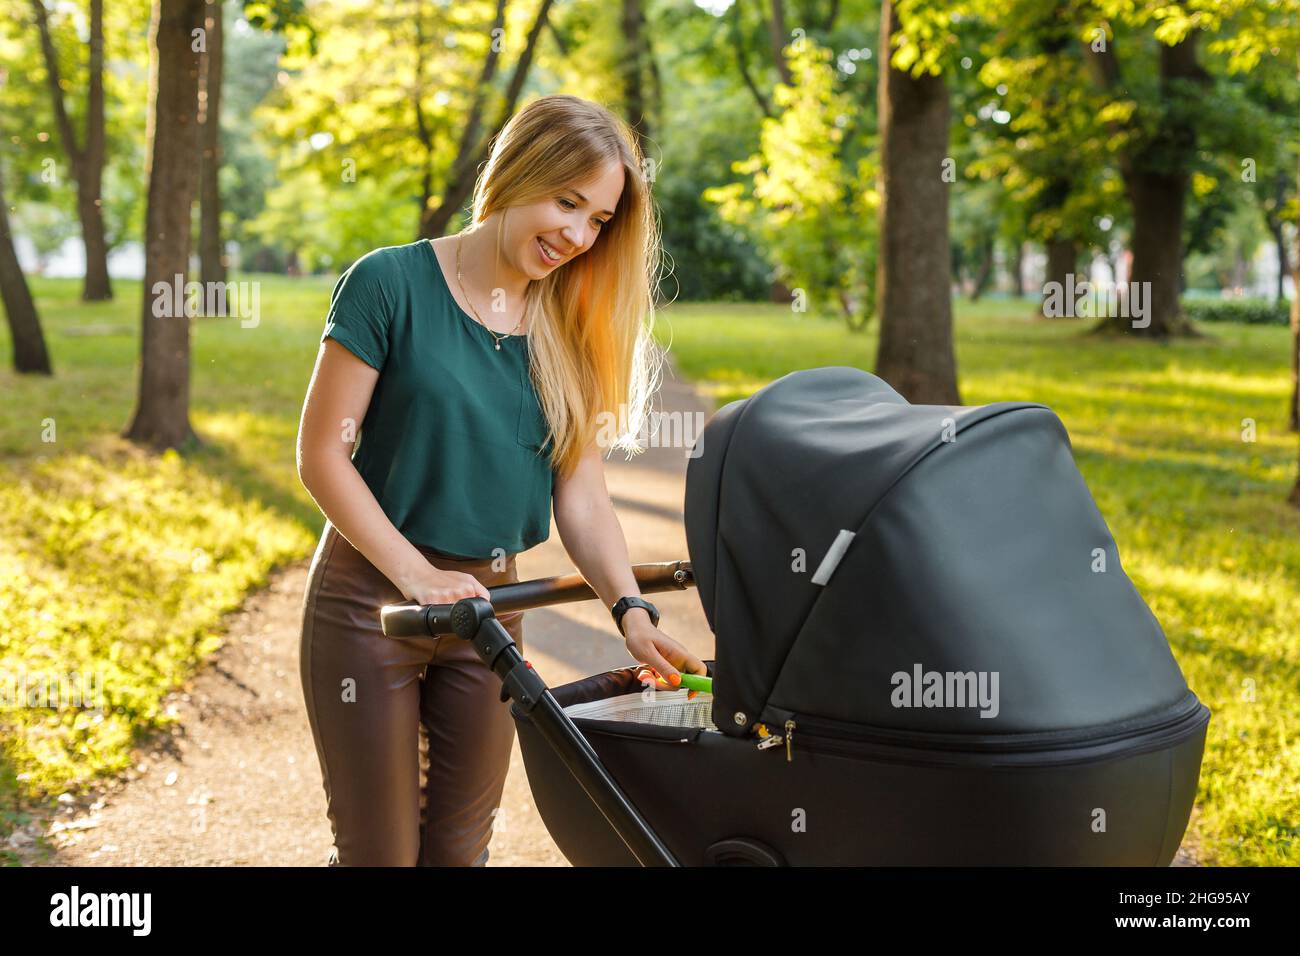 Junge blonde Frau, die mit schwarzem Kinderwagen im Sommerpark läuft. Glückliche Mutter mit Baby im Kinderwagen im Freien. Stockfoto